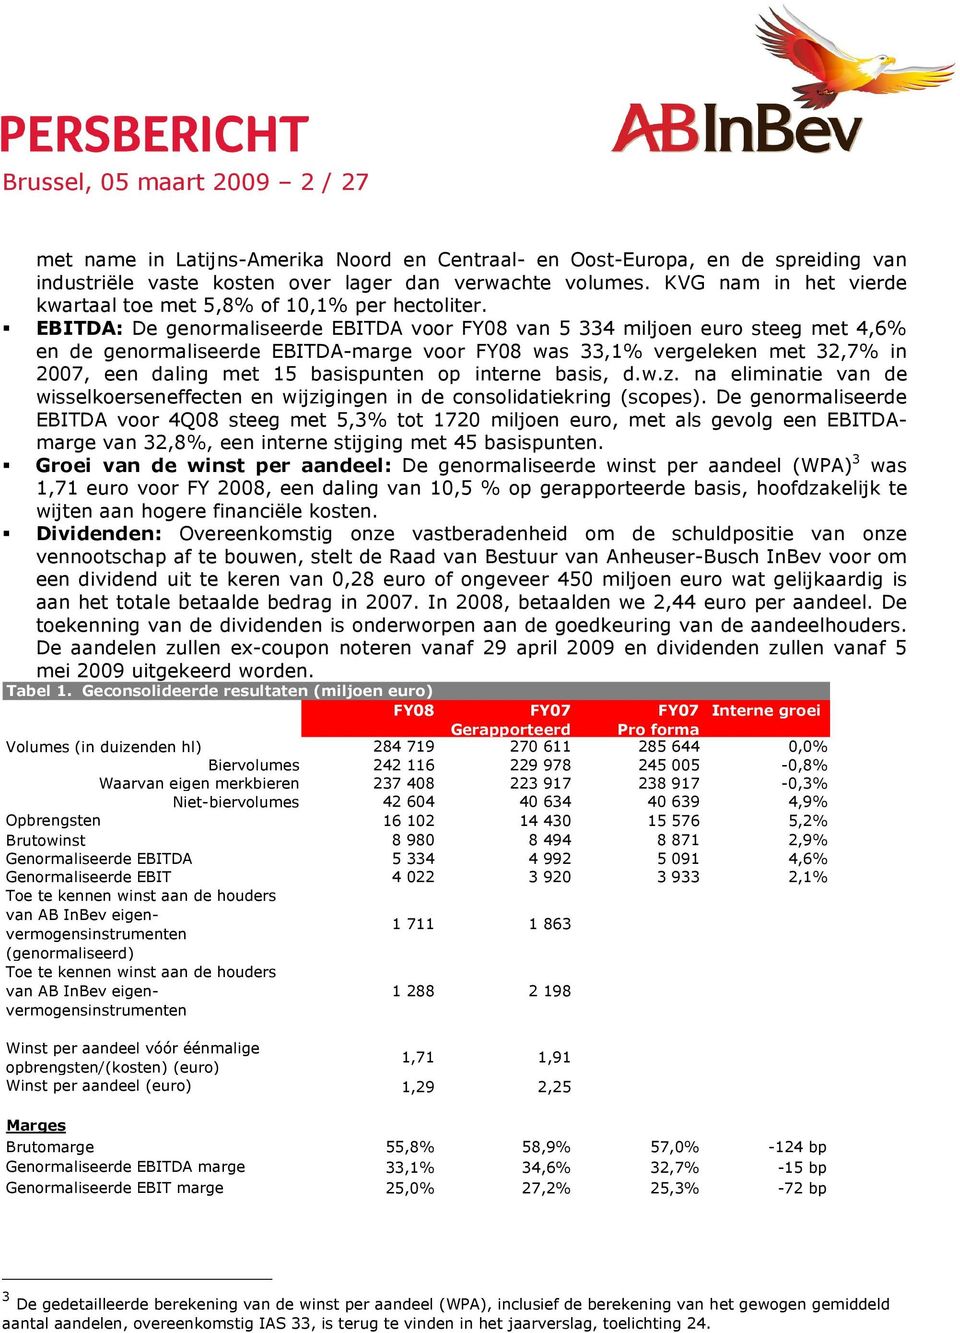 EBITDA: De genormaliseerde EBITDA voor FY08 van 5 334 miljoen euro steeg met 4,6% en de genormaliseerde EBITDA-marge voor FY08 was 33,1% vergeleken met 32,7% in 2007, een daling met 15 basispunten op